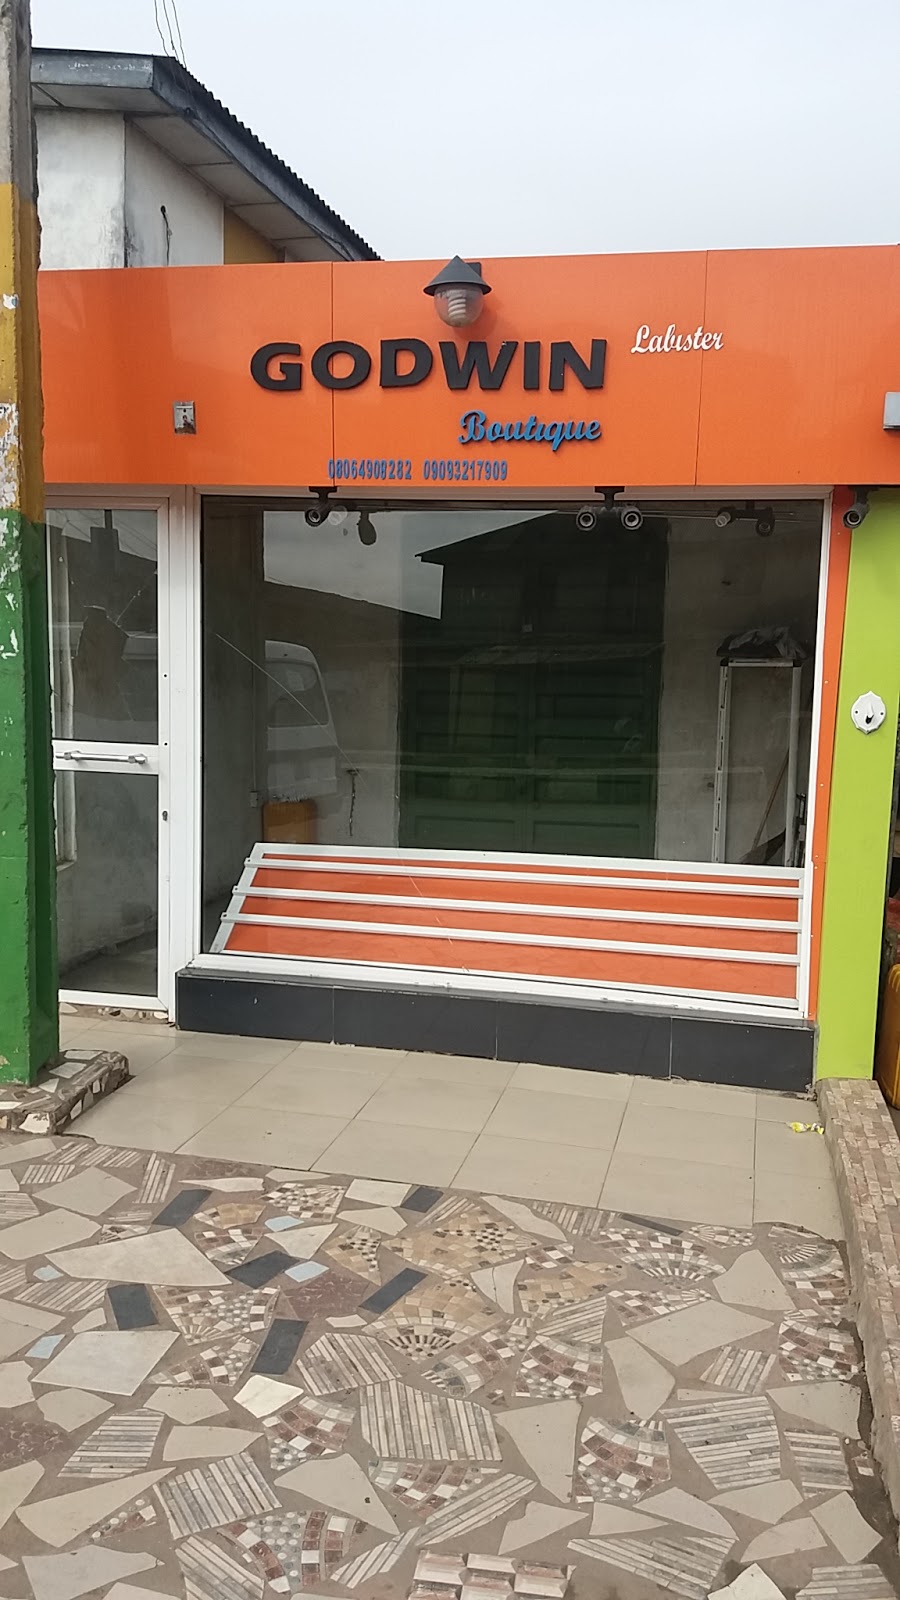 Godwin Boutique